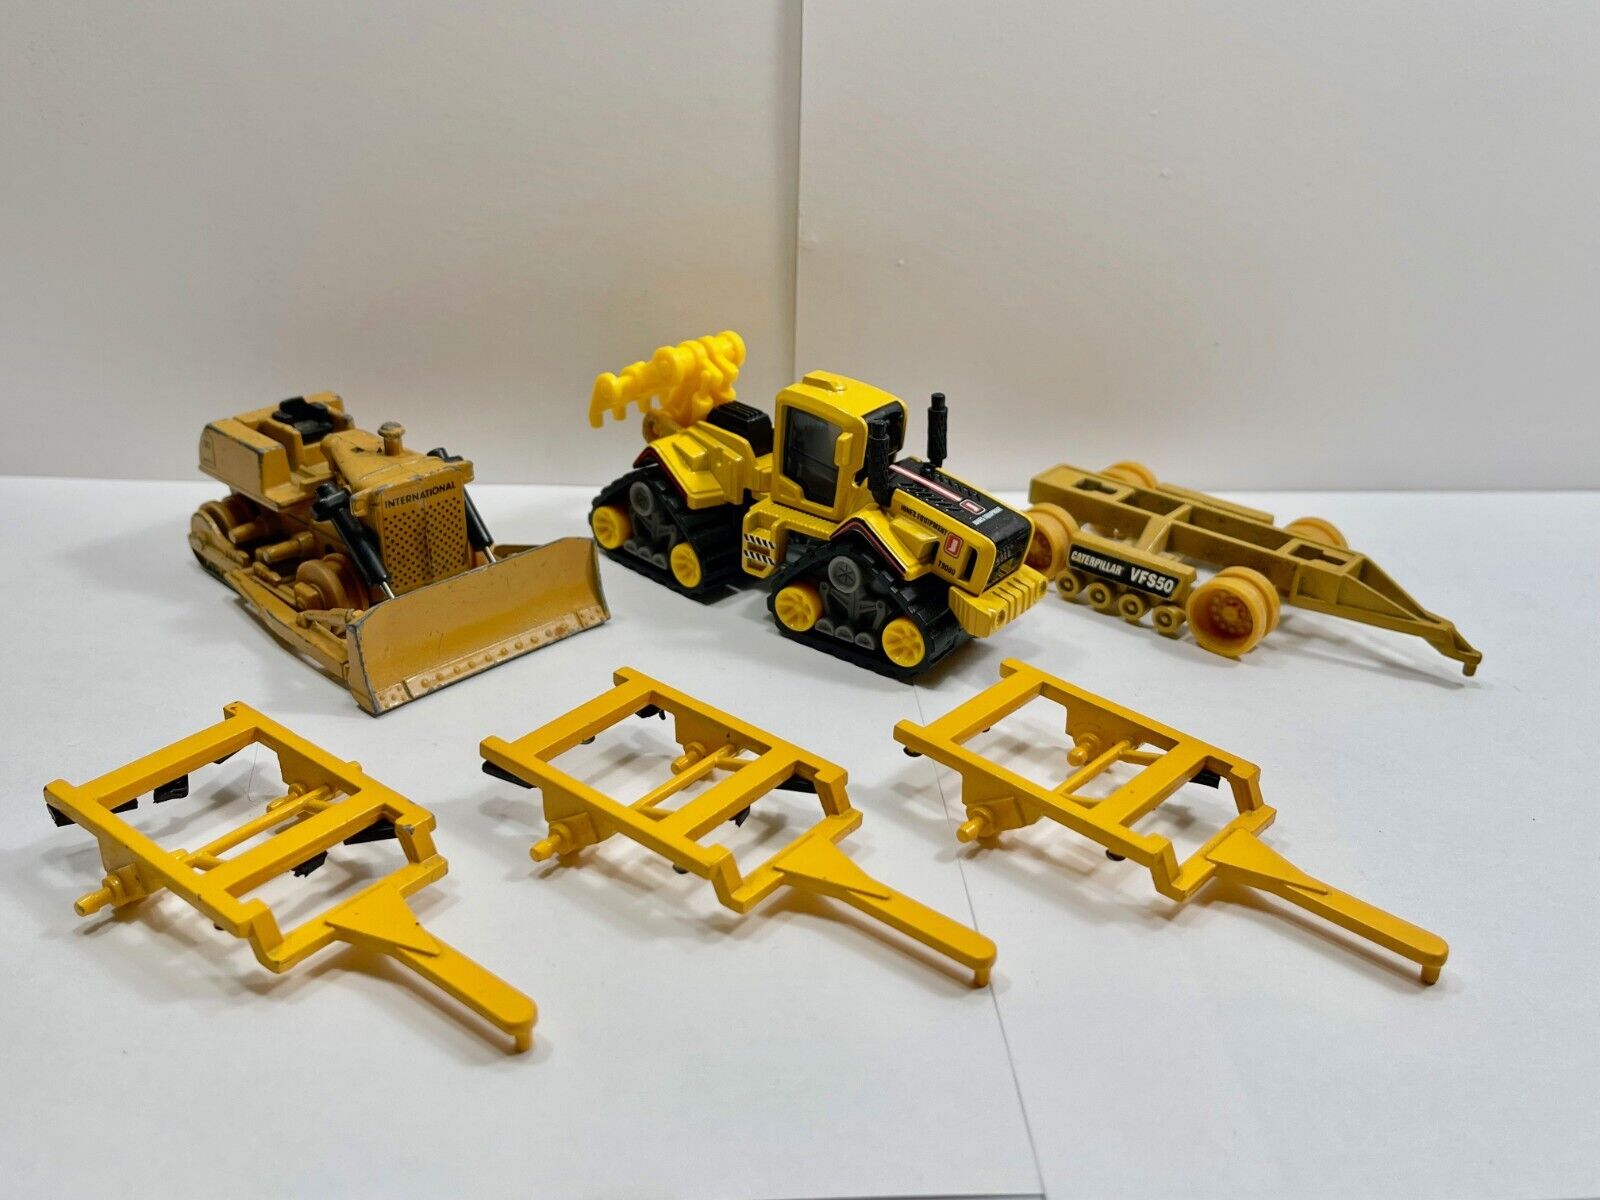 ERTL 1/64 Scale- Construction Equipment Lot (IH TD20 Dozer, Speed Dozer, Disks)